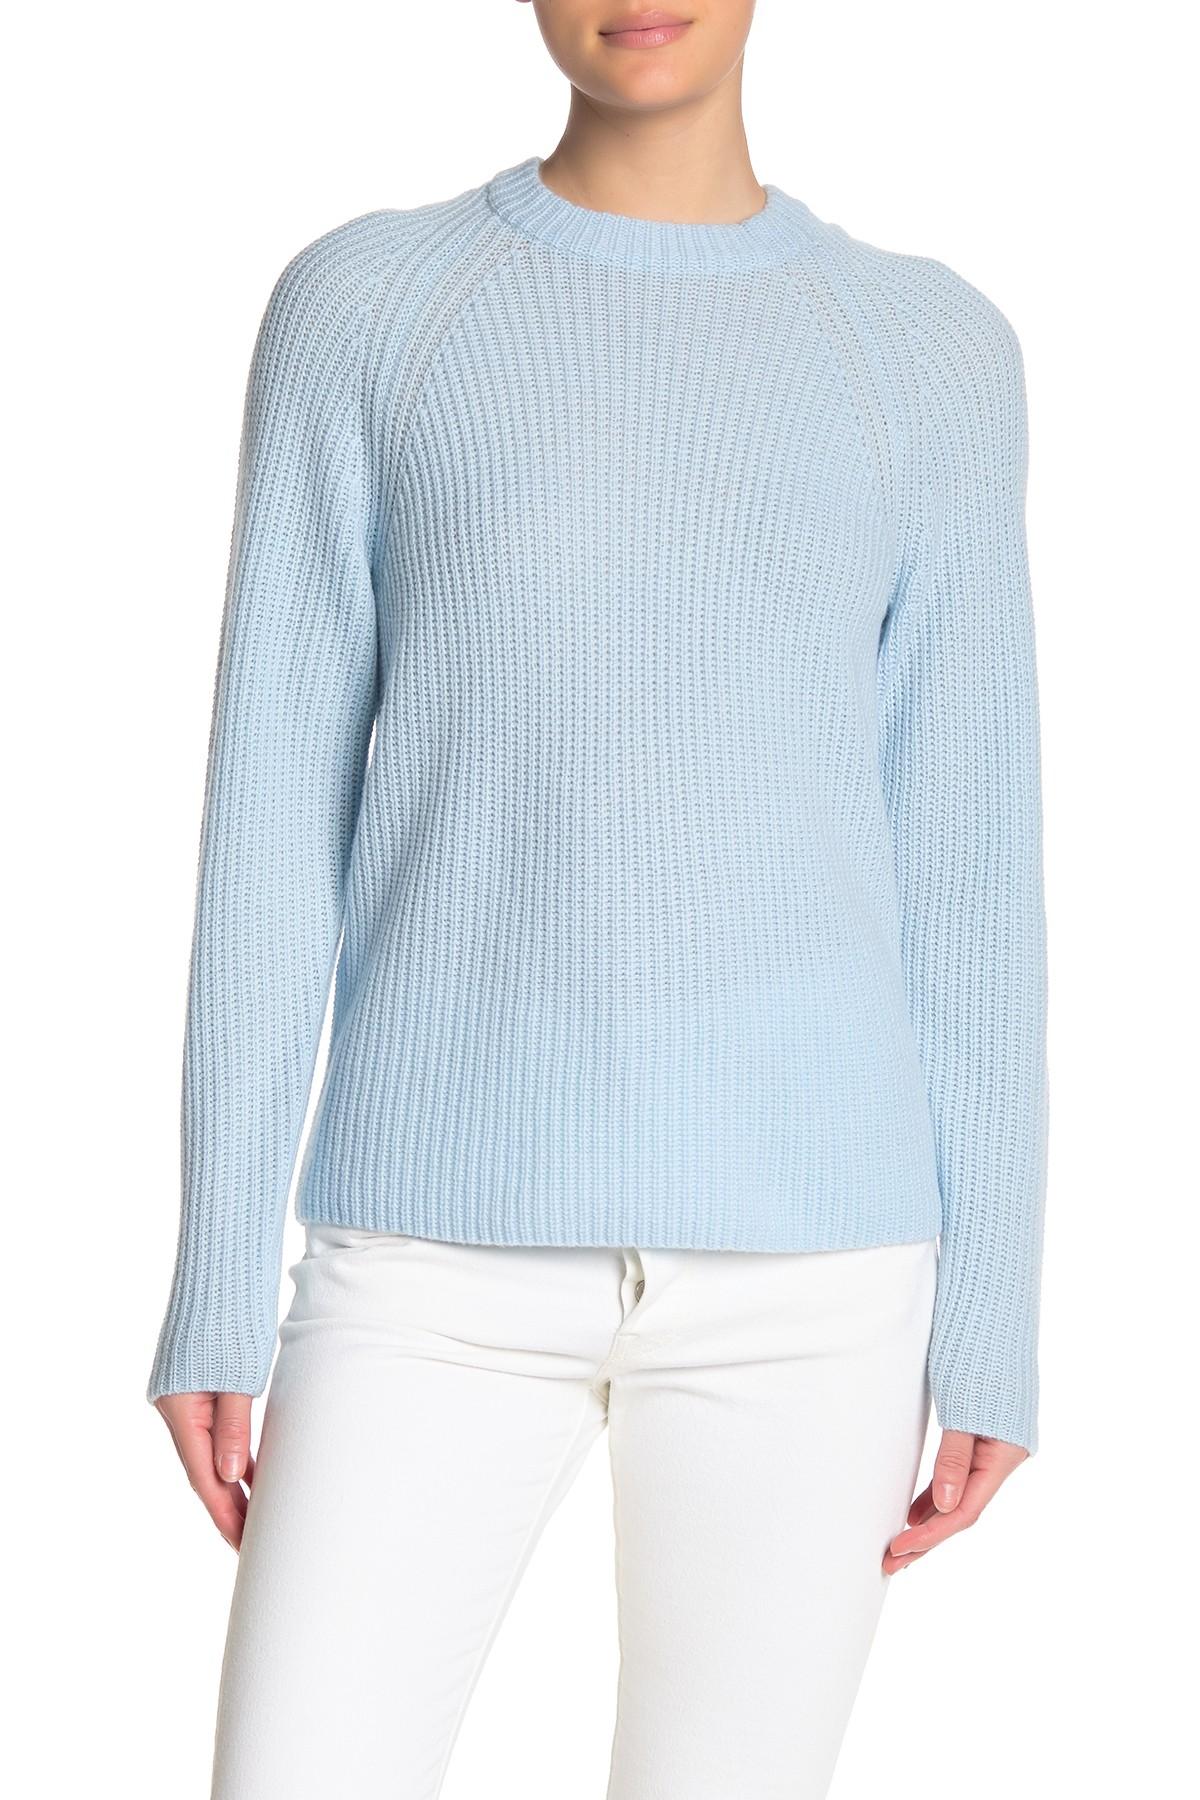 Vince Raglan Sleeve Wool & Cashmere Sweater Hoodie in Blue - Lyst